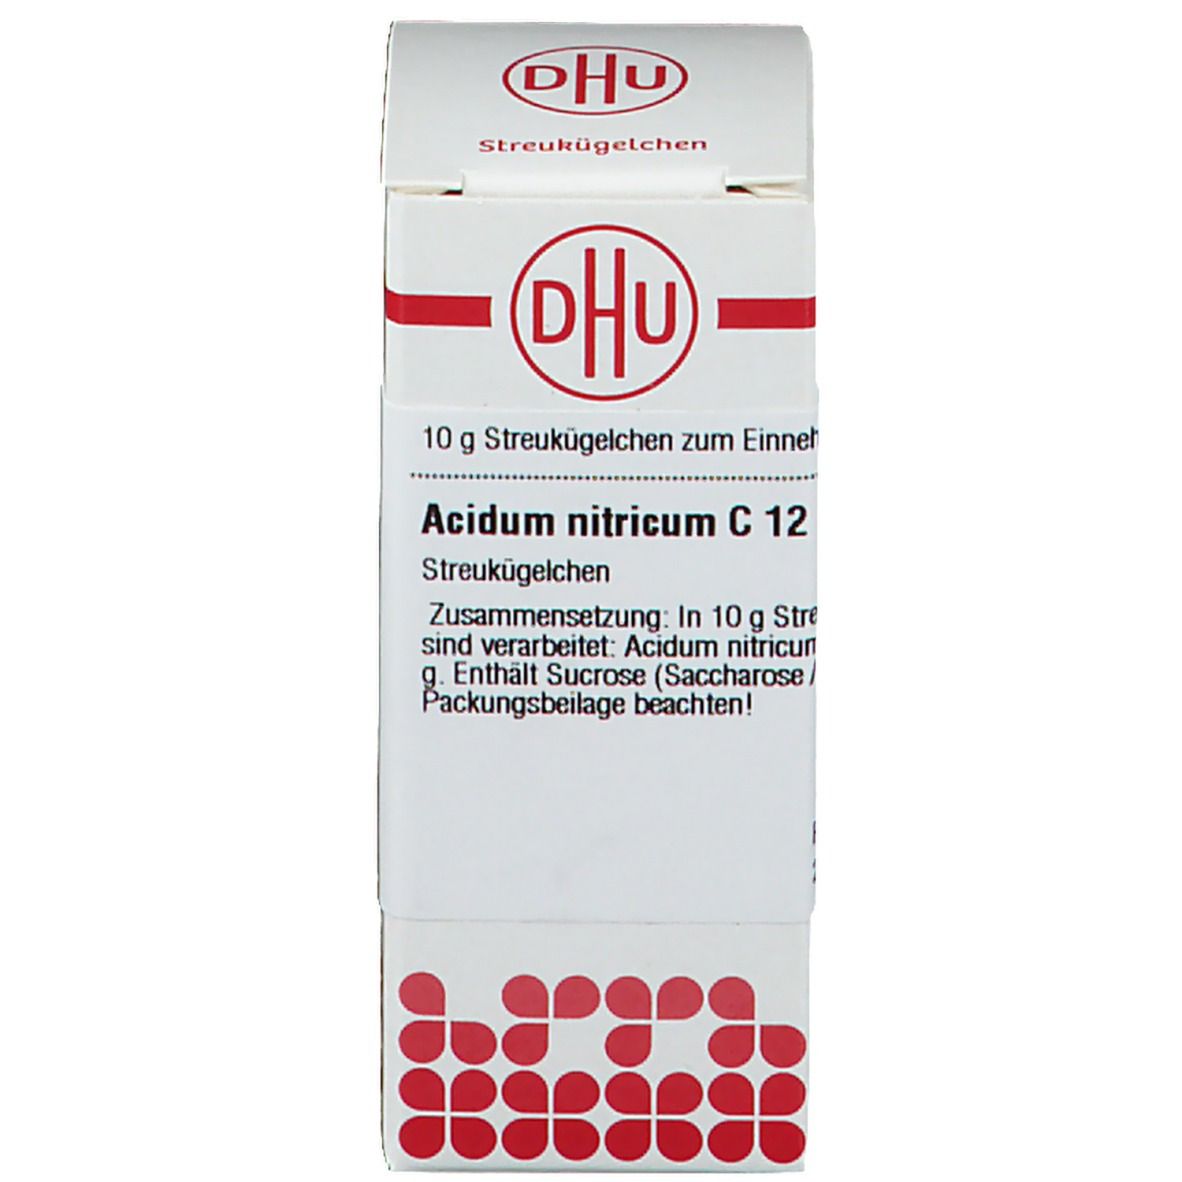 DHU Acidum Nitricum C12